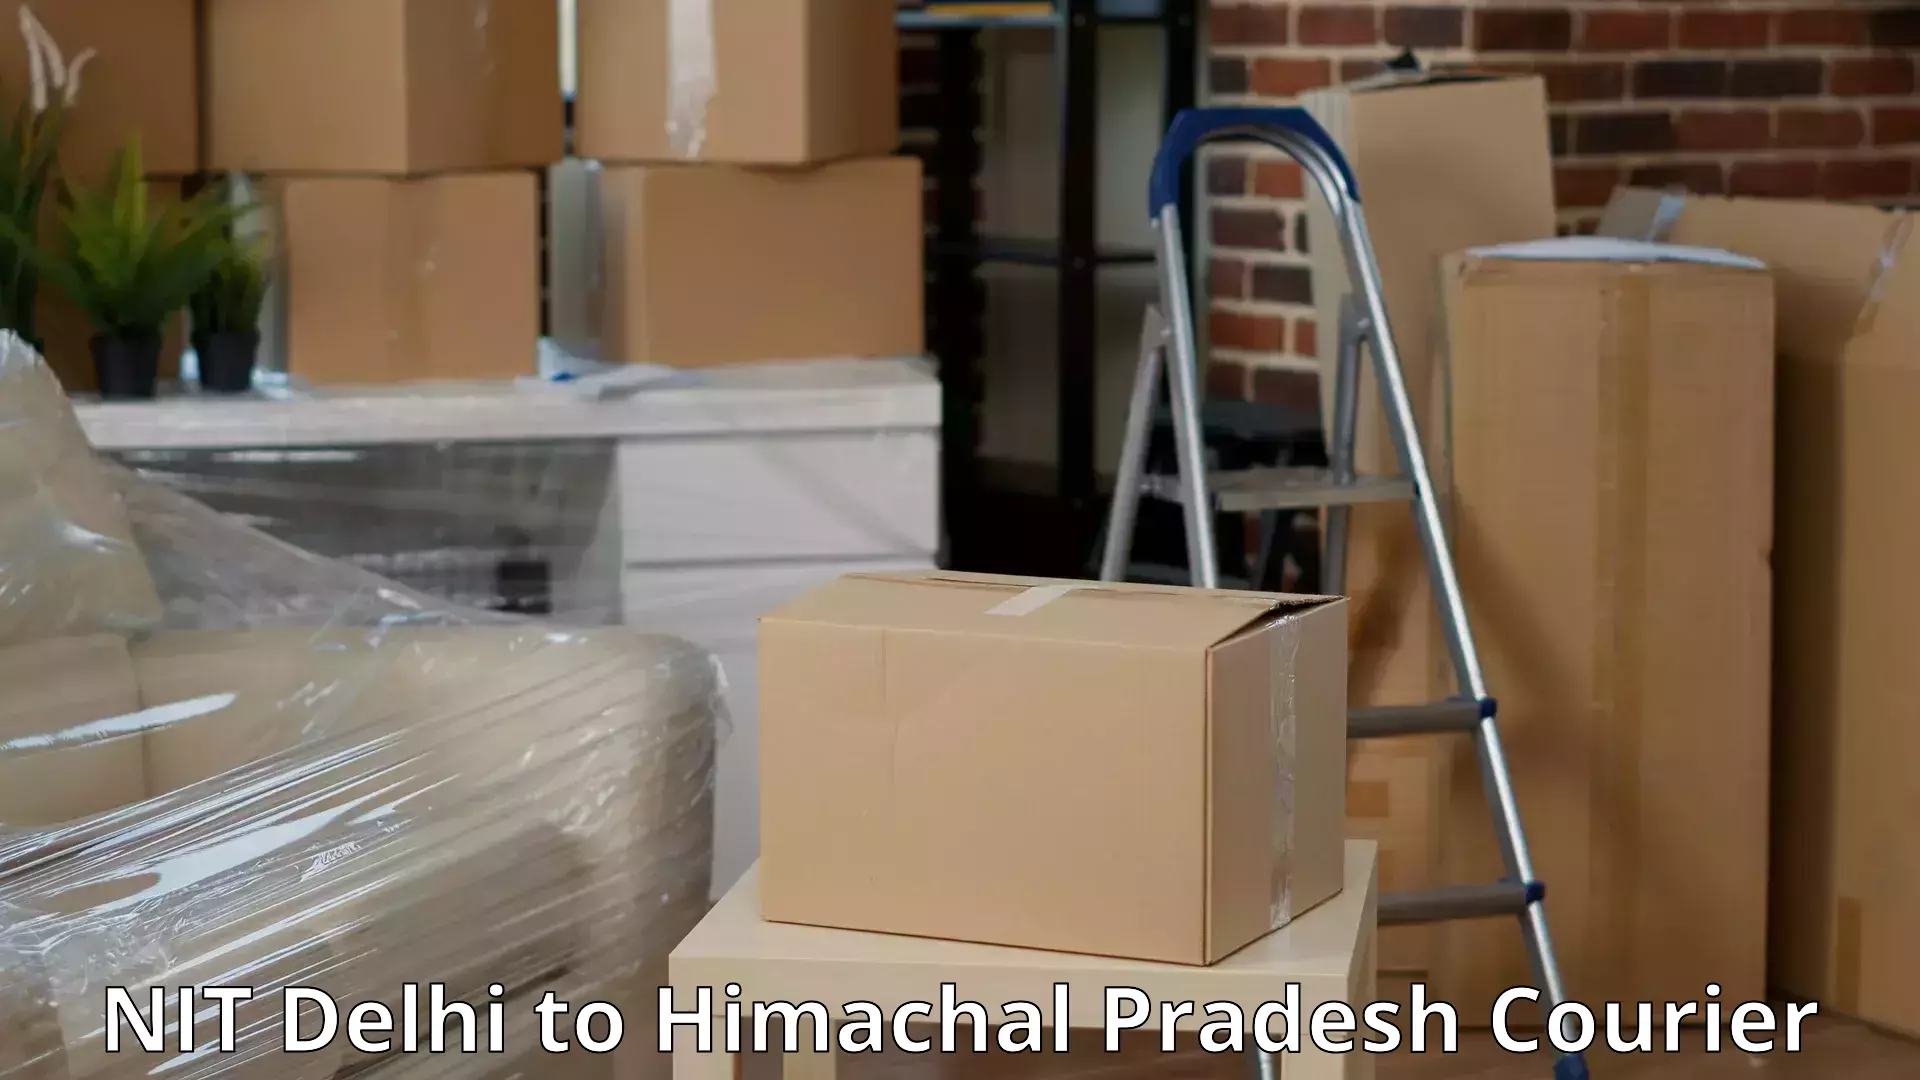 Professional moving company NIT Delhi to Kinnaur